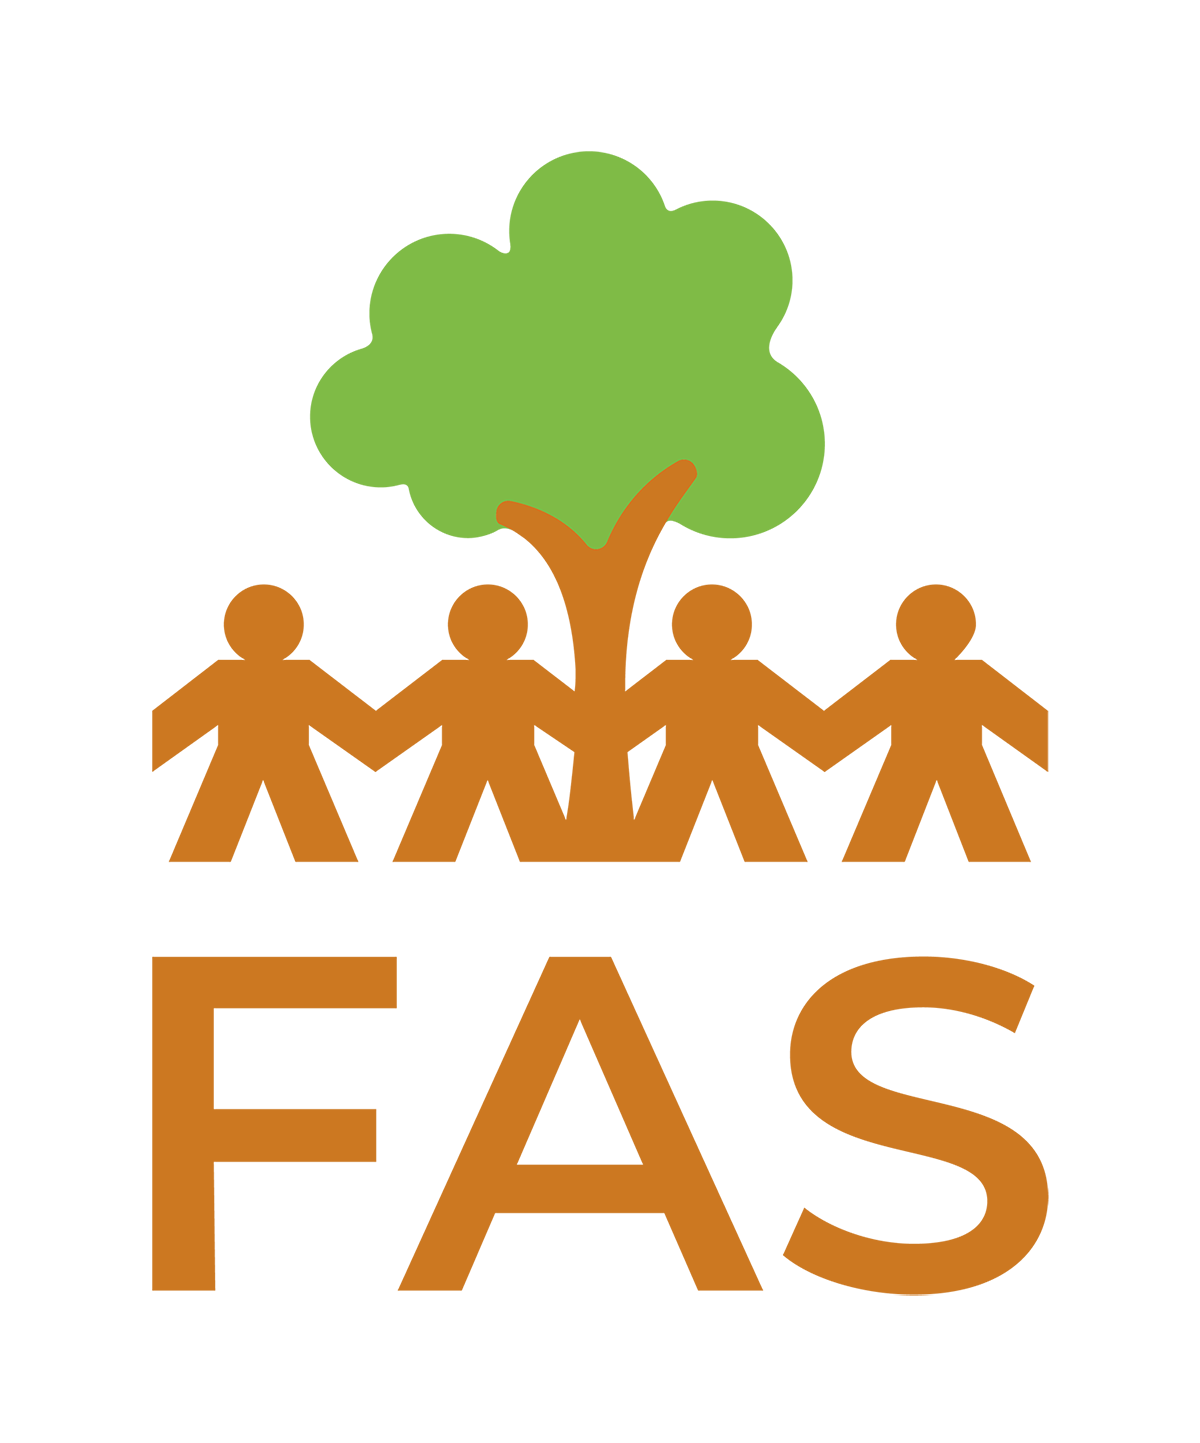 Foundation for Amazon Sustainability (FAS)